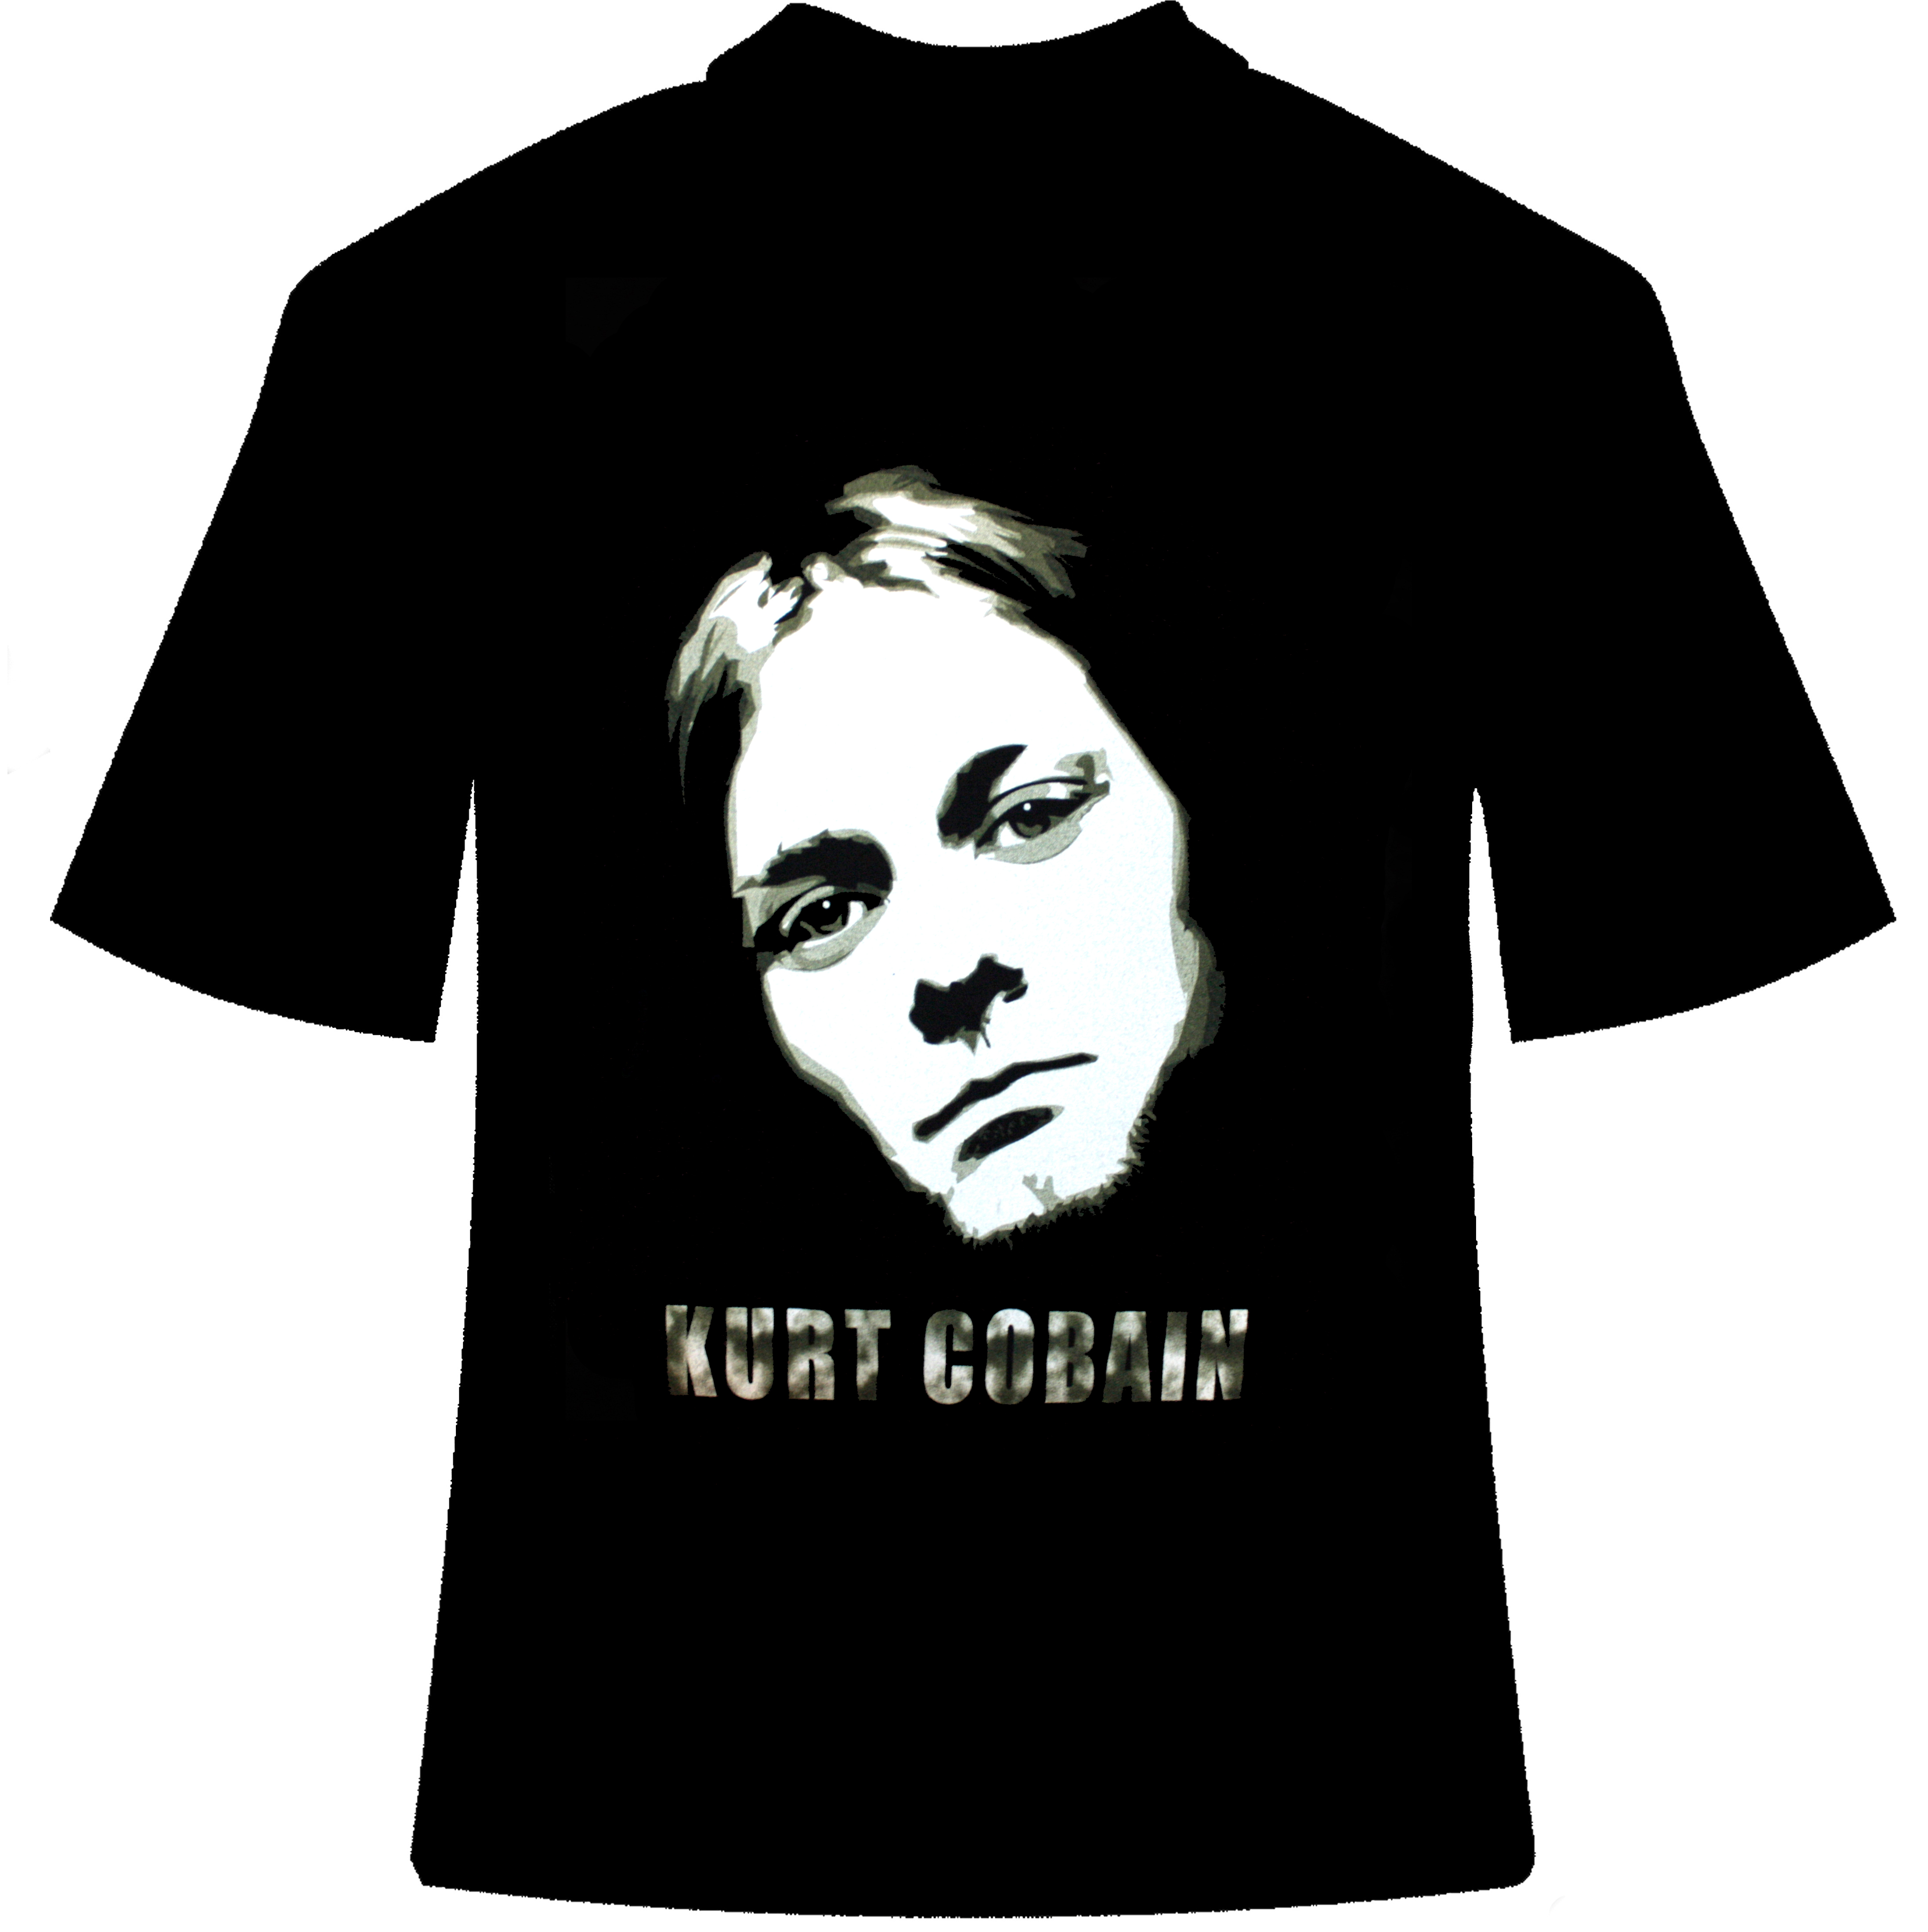 Футболка Kurt Cobain - фото 2 - rockbunker.ru